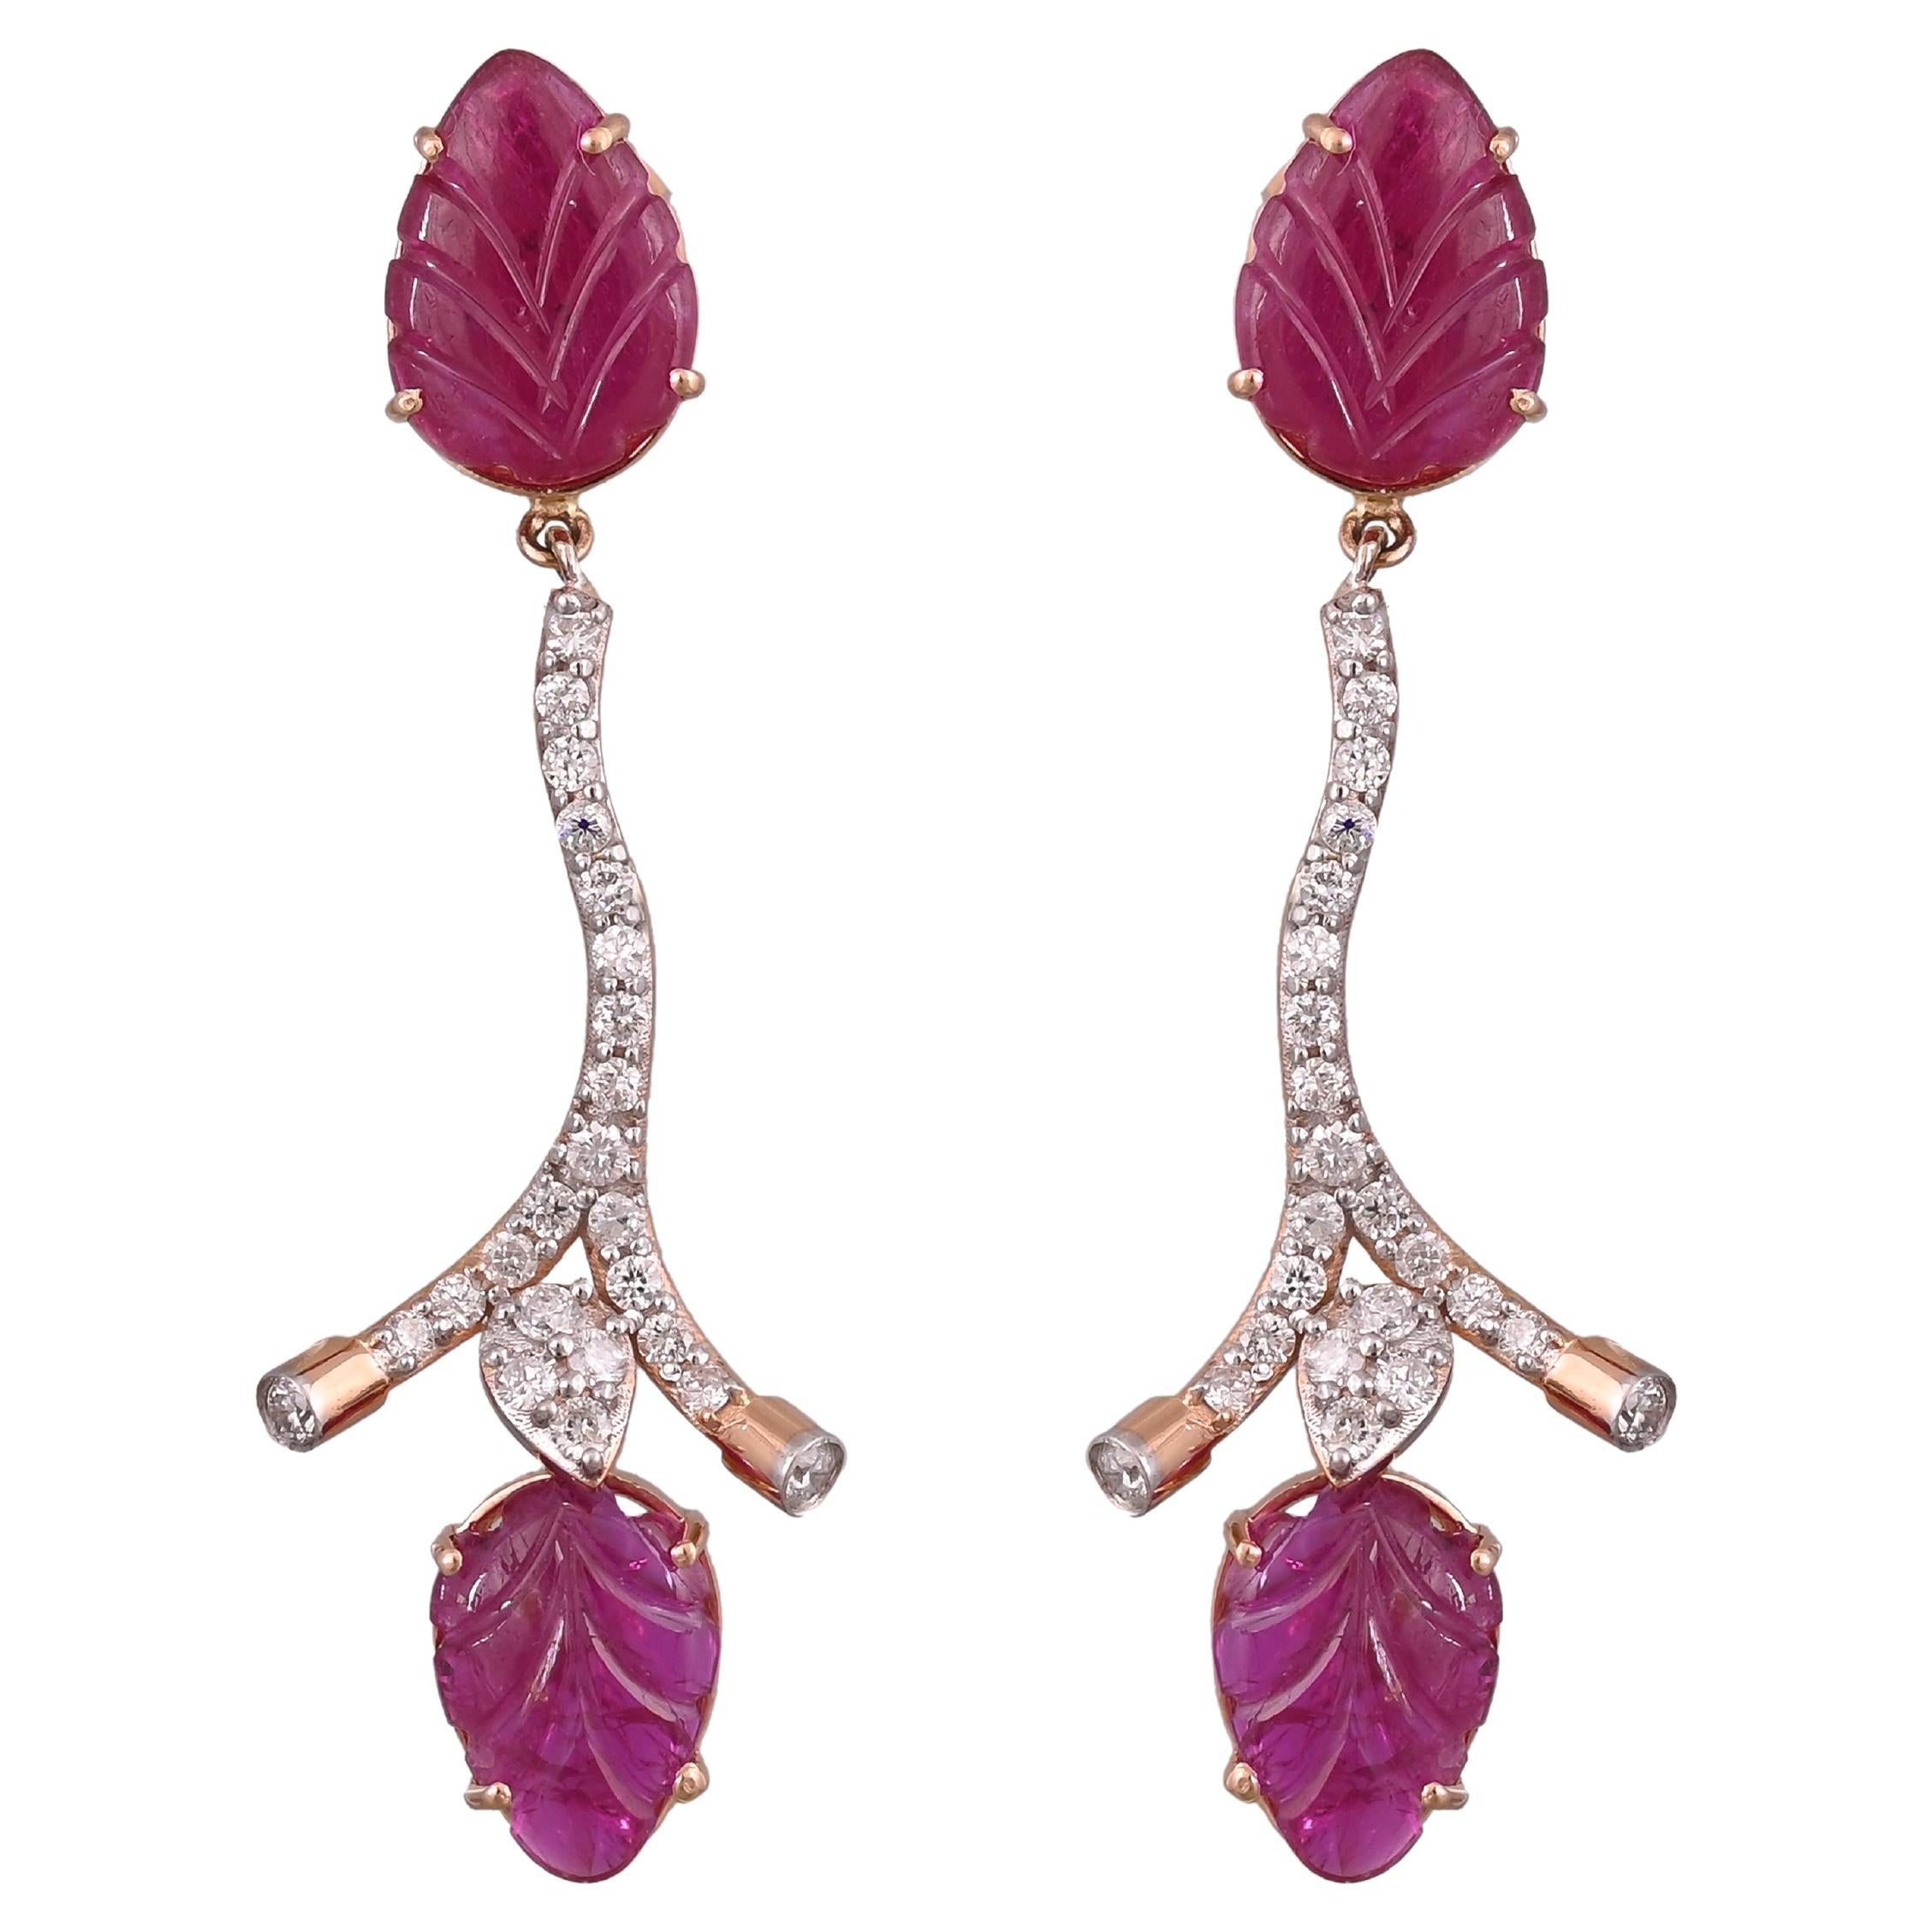 Set in 18K Gold, 7.75 carats, Mozambique Ruby & Diamonds Chandelier Earrings